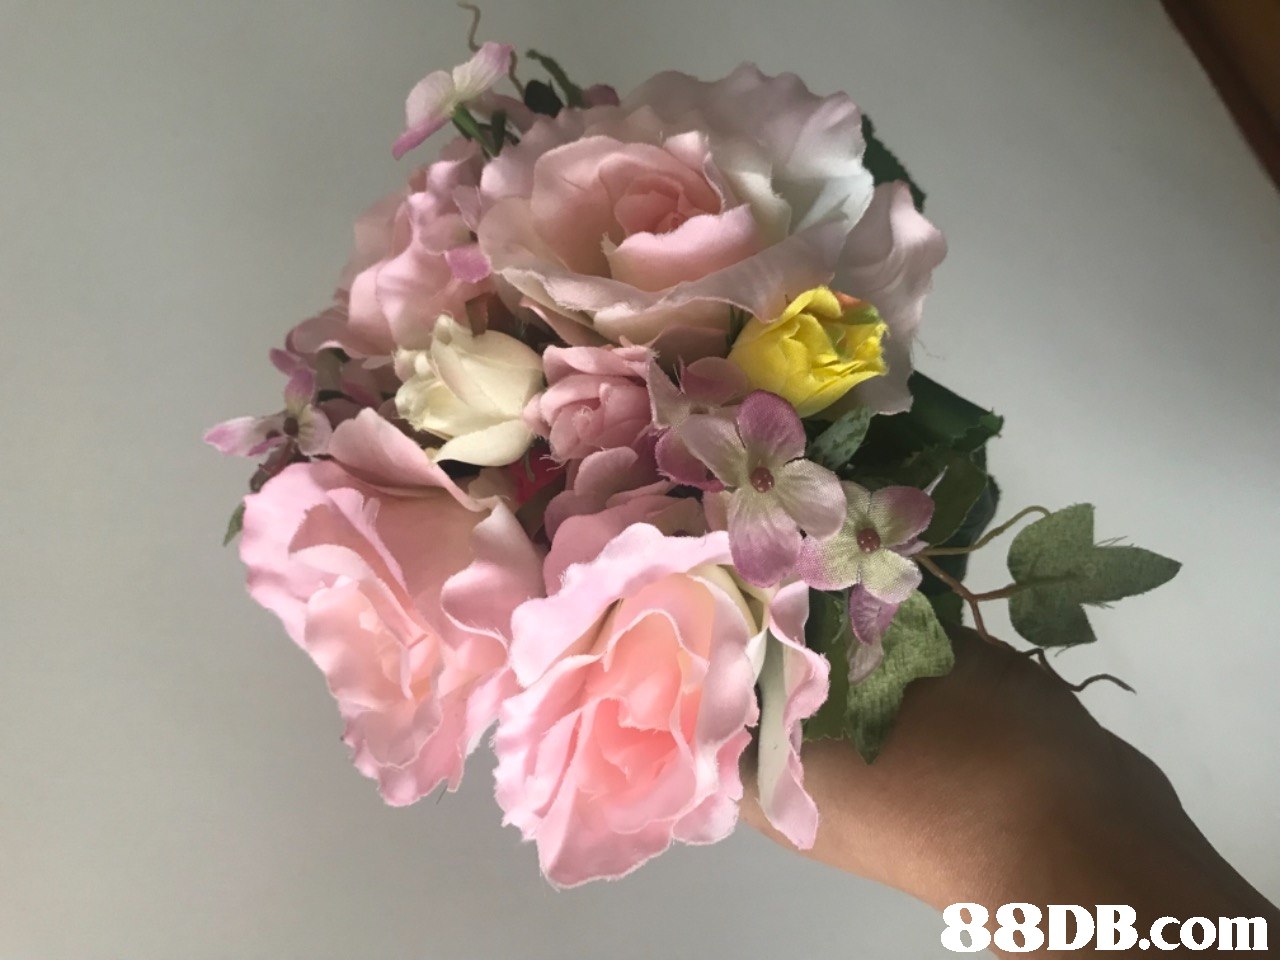   flower,pink,flower bouquet,cut flowers,flower arranging